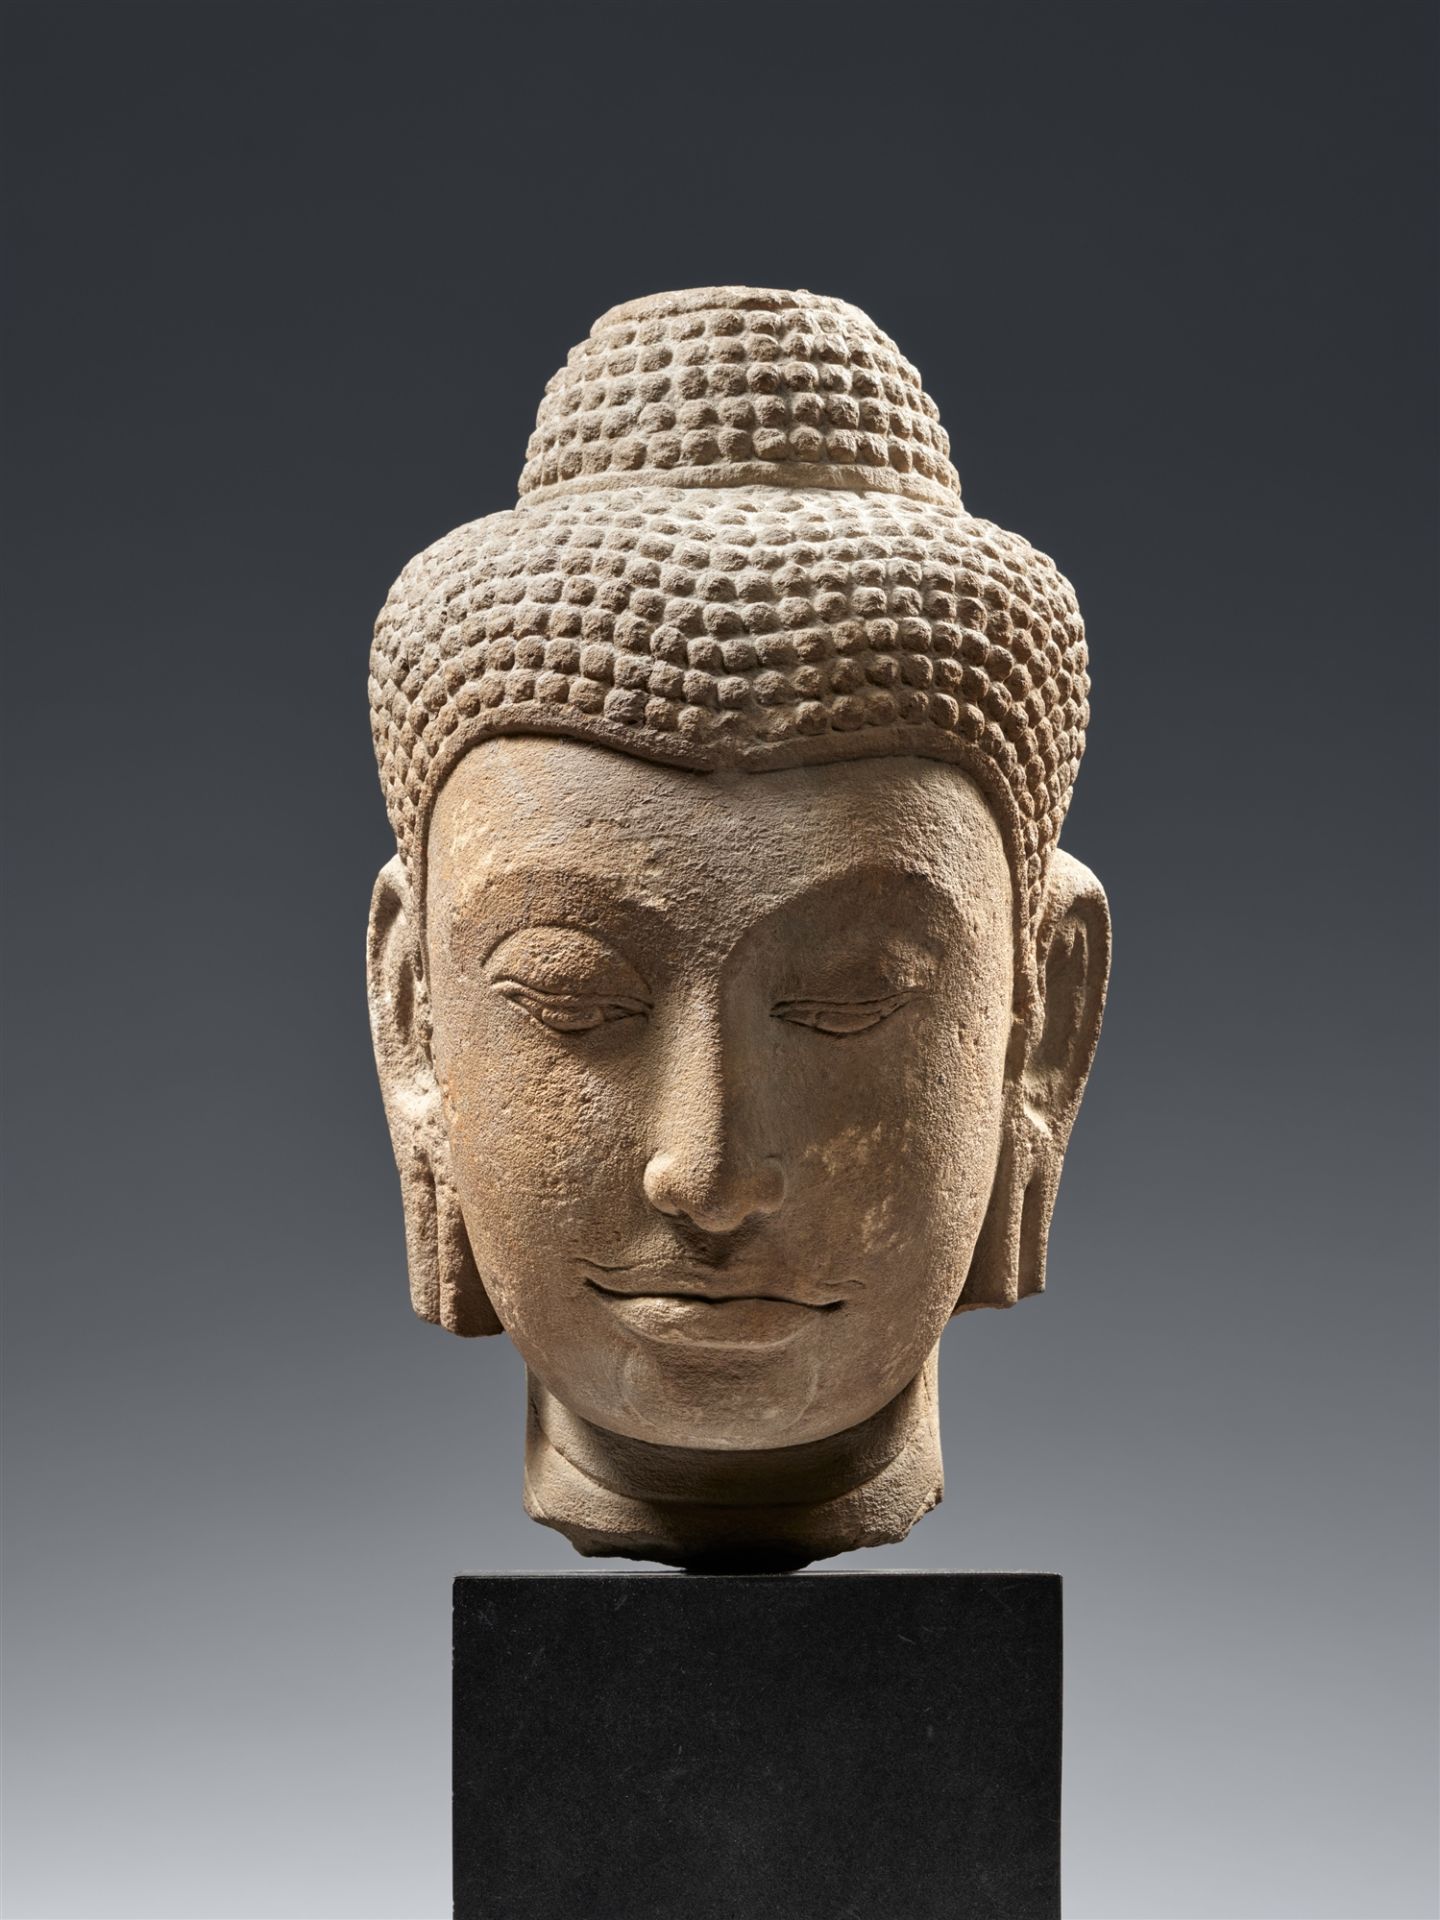 Kopf eines Buddha. Sandstein. Thailand, Ayutthaya. 15./16. Jh.